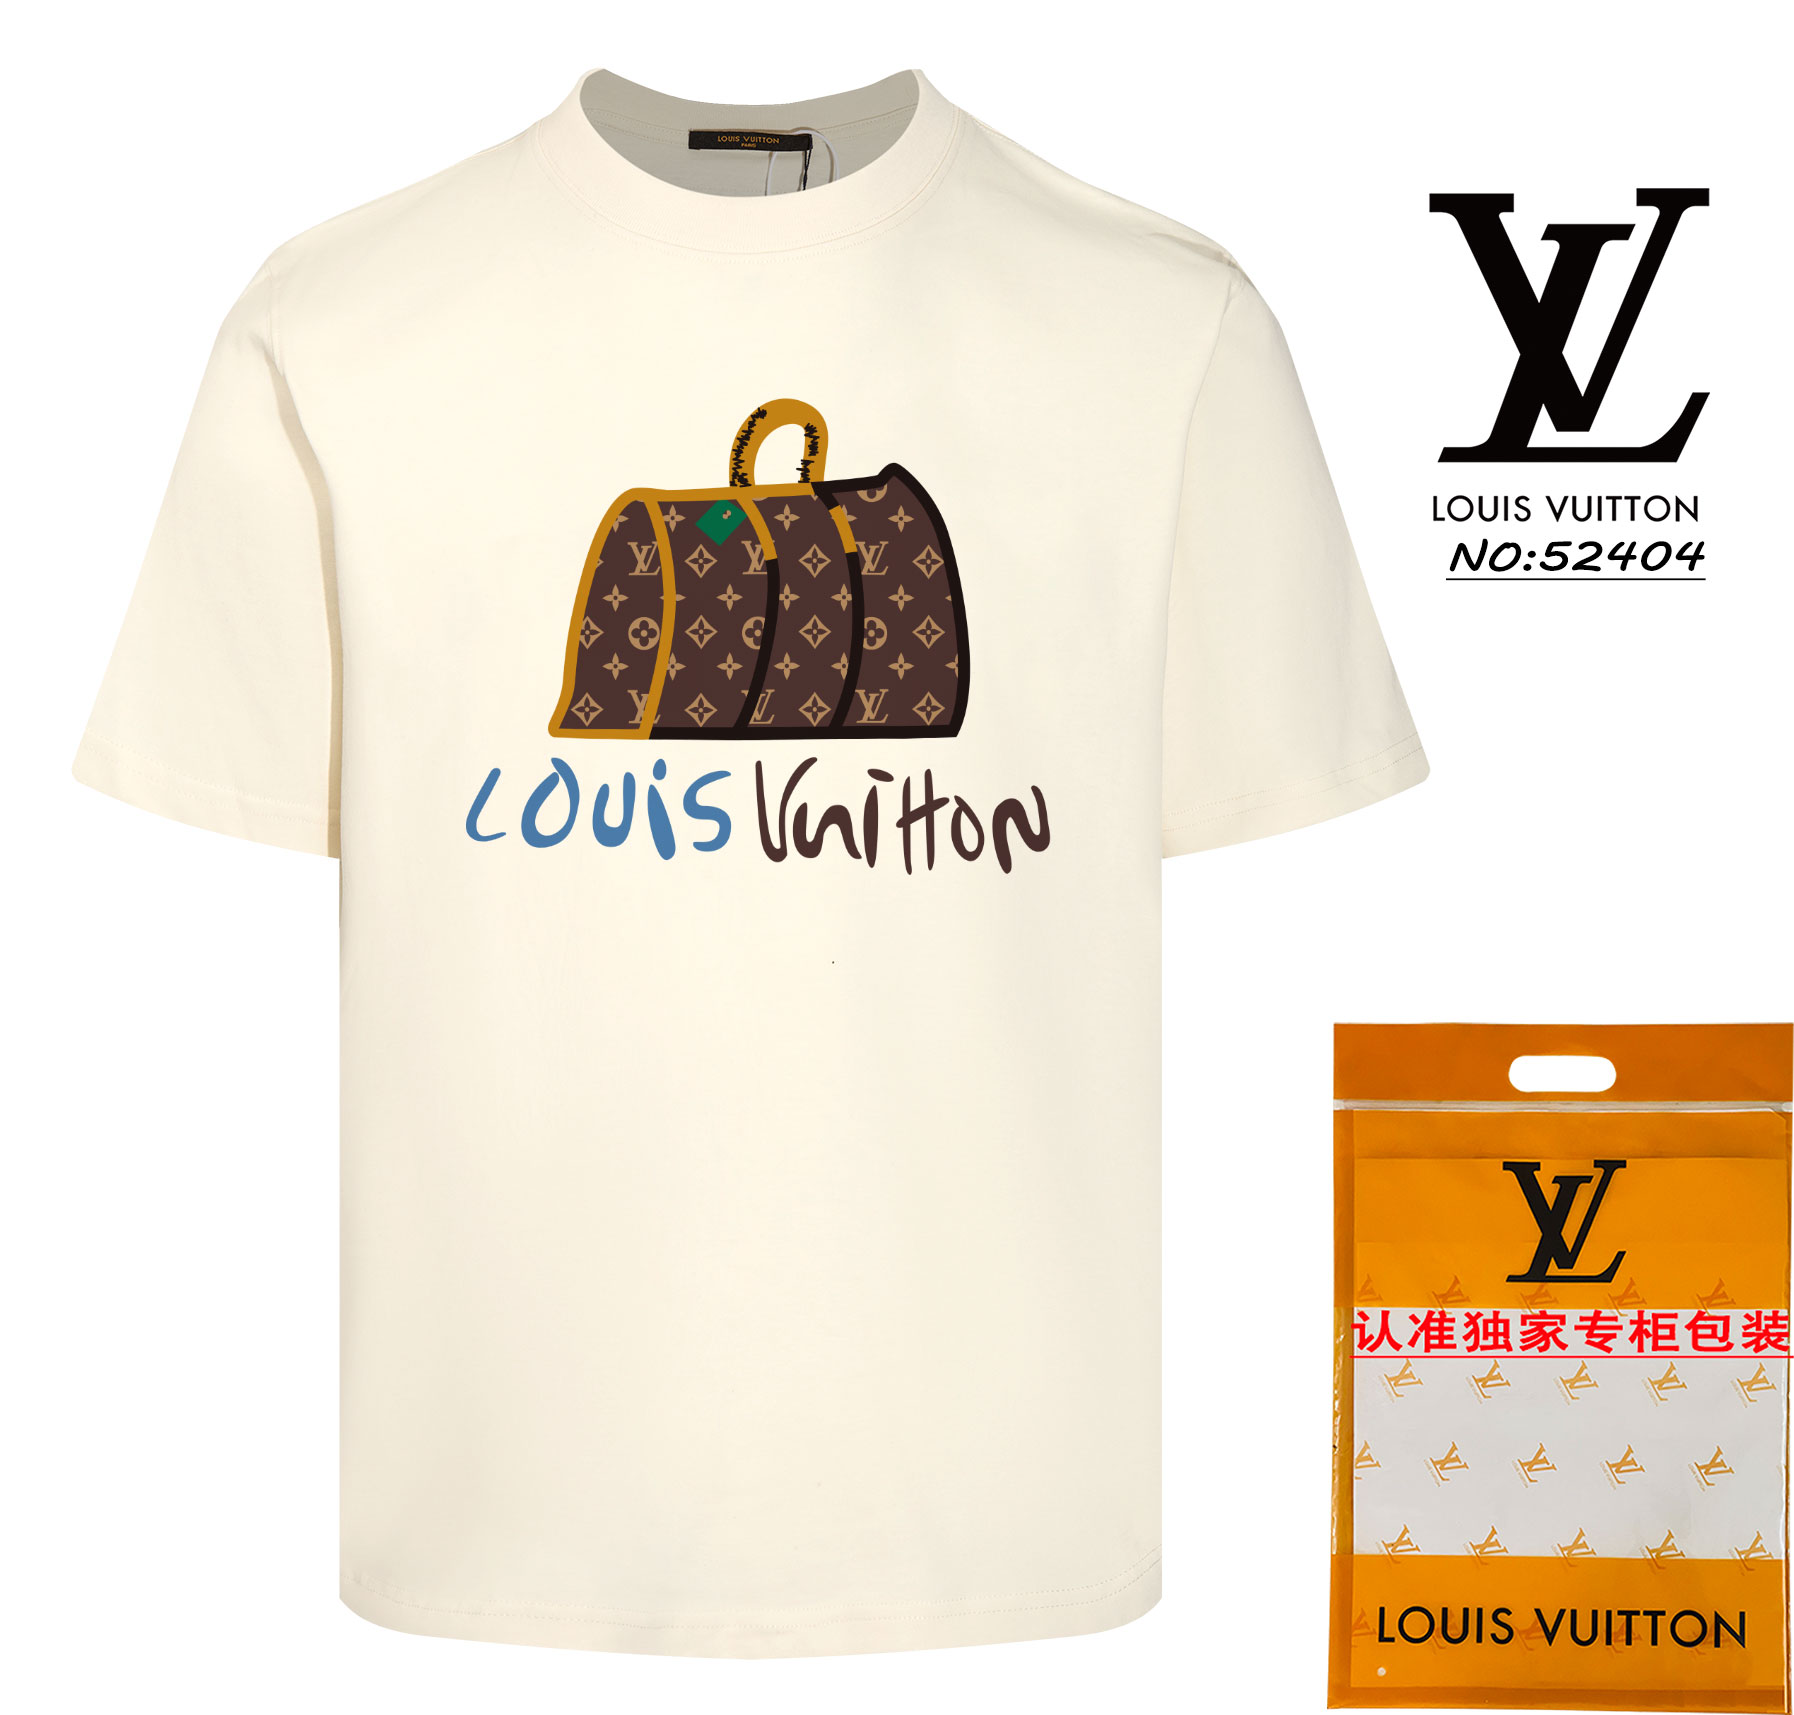 Louis Vuitton Wholesale
 Clothing T-Shirt Online Sales
 Apricot Color Black White Unisex Short Sleeve